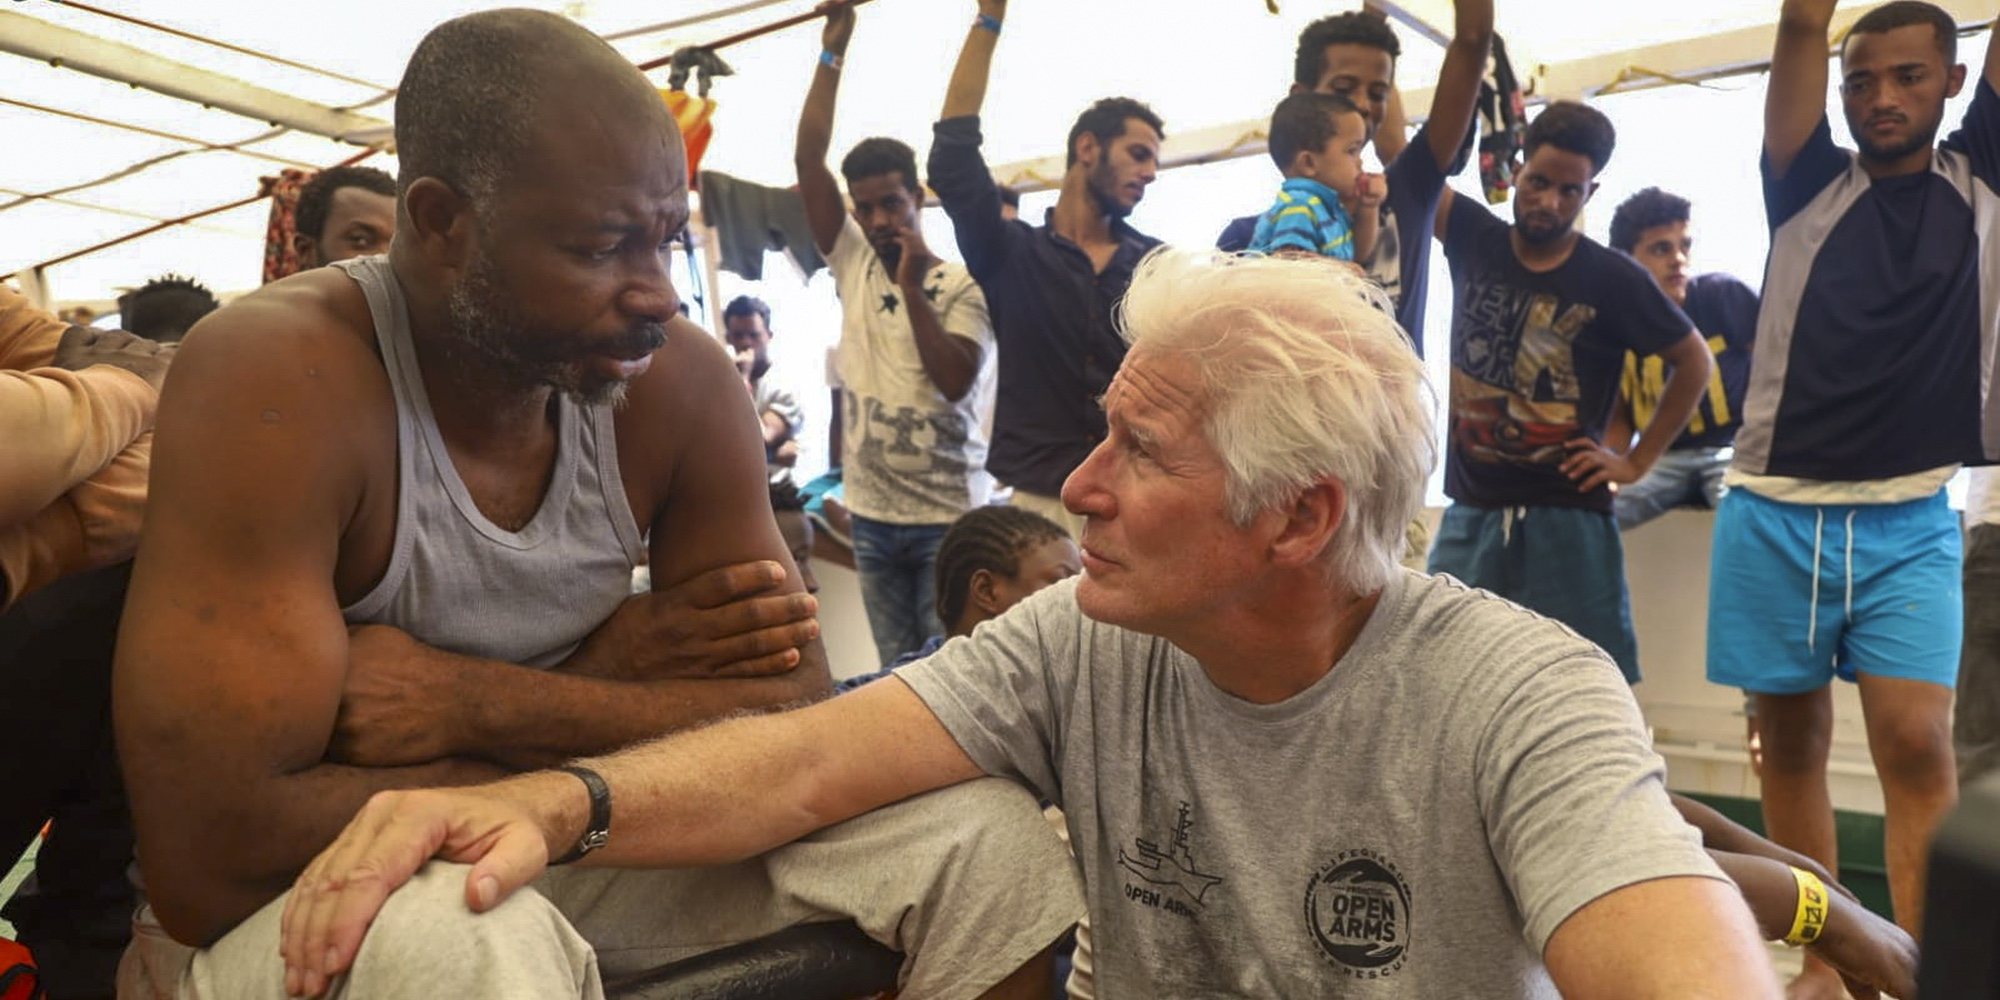 Lluvia de críticas hacia Richard Gere después de ayudar a refugiados del 'Open Arms' llegando en yate privado